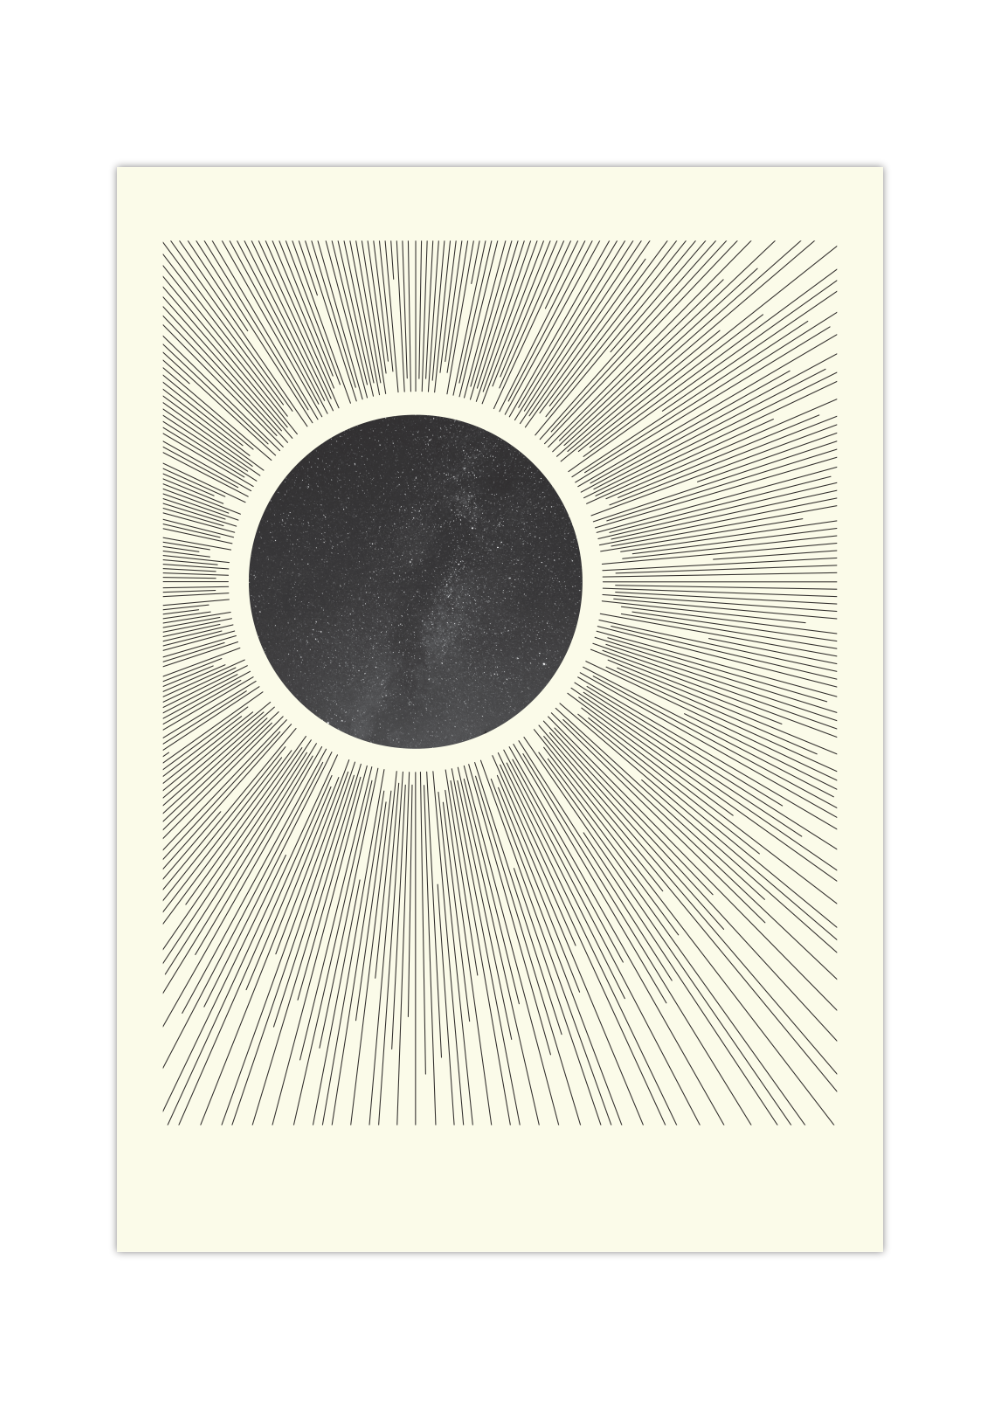 Das Poster zeigt dir einen Blick in den Himmel, mit dem Mond (inklusive Sterne innerhalb) der gleichzeitig eine Sonne darstellt.